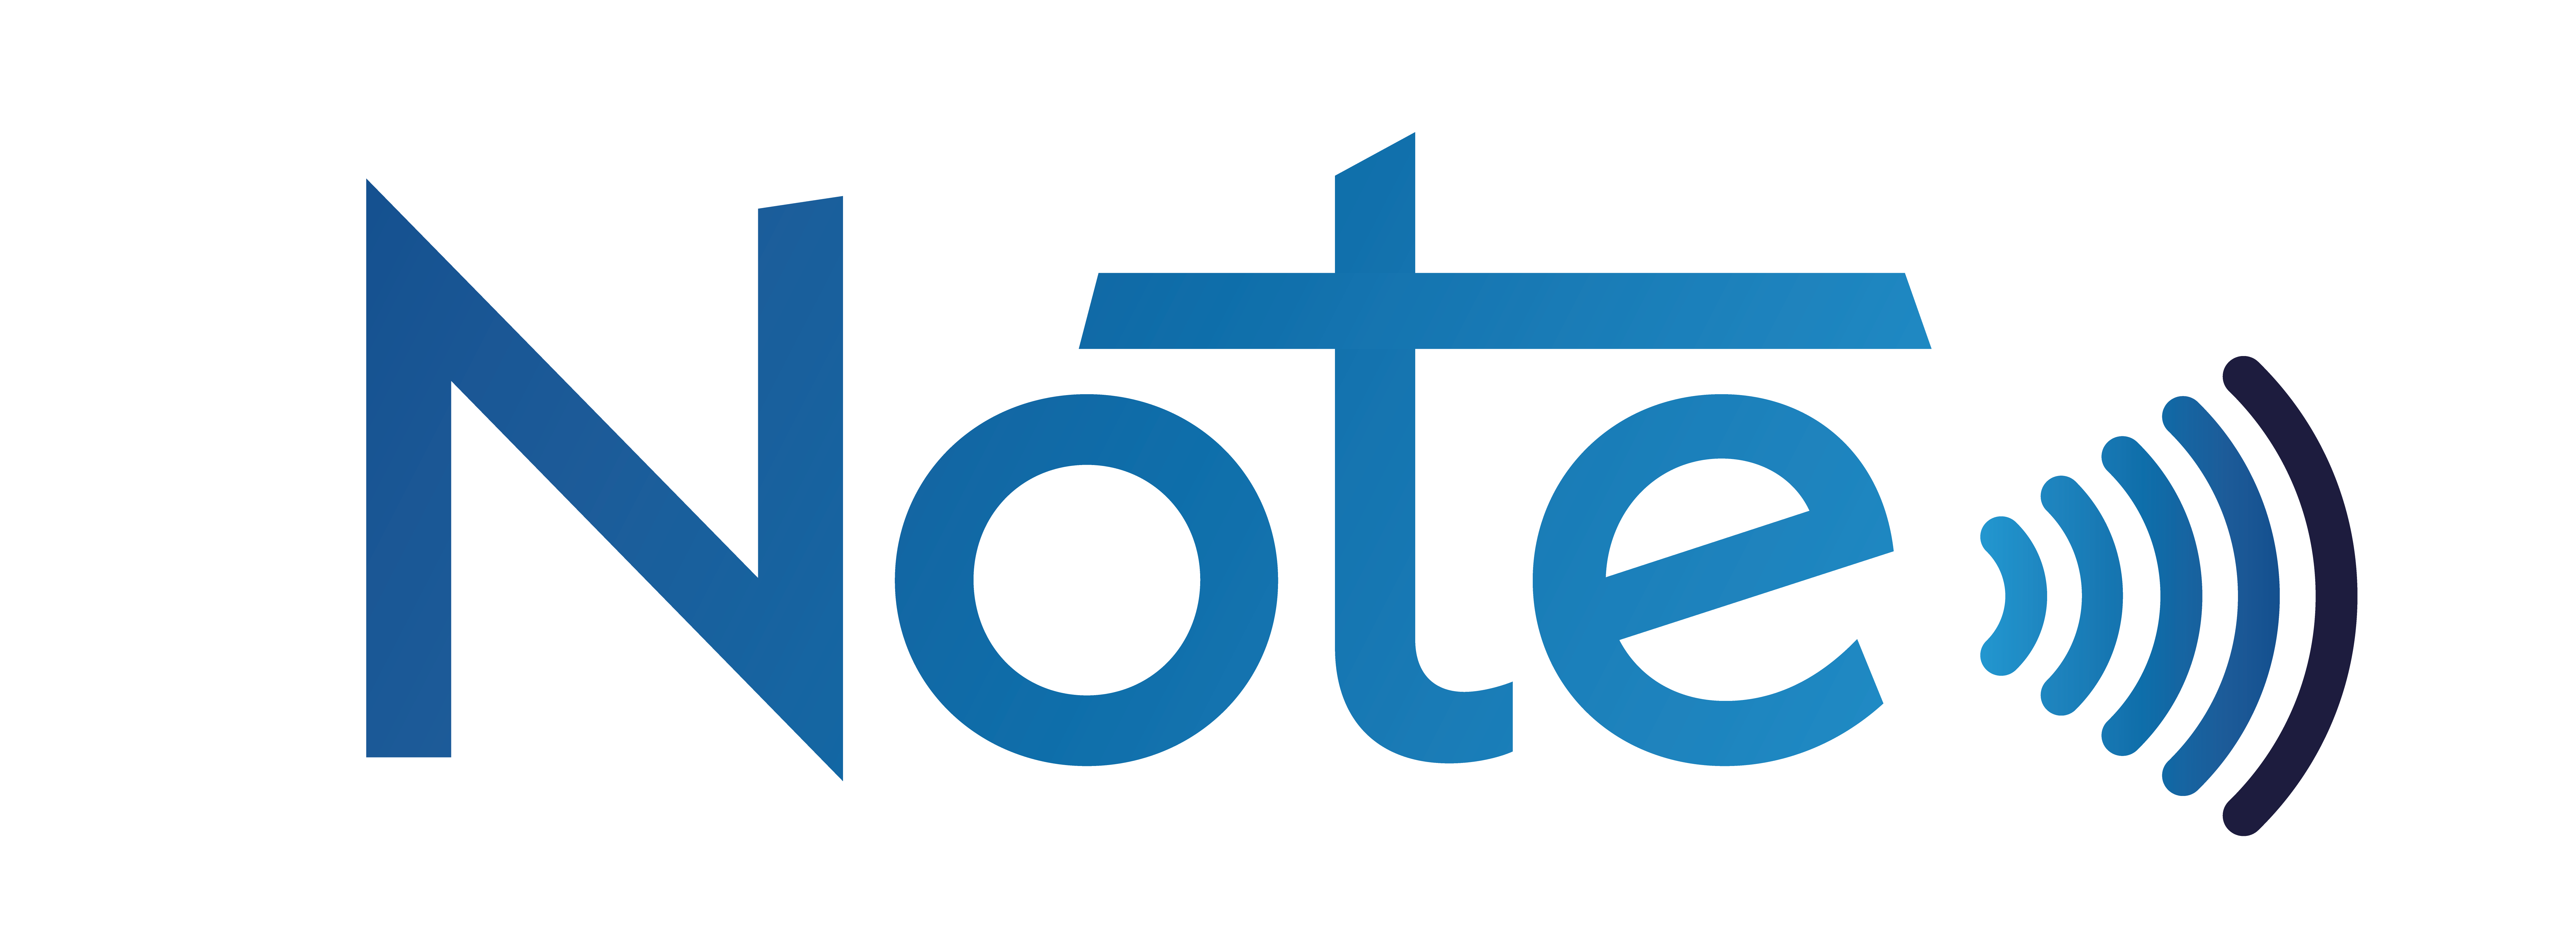 logo du groupe Otélio